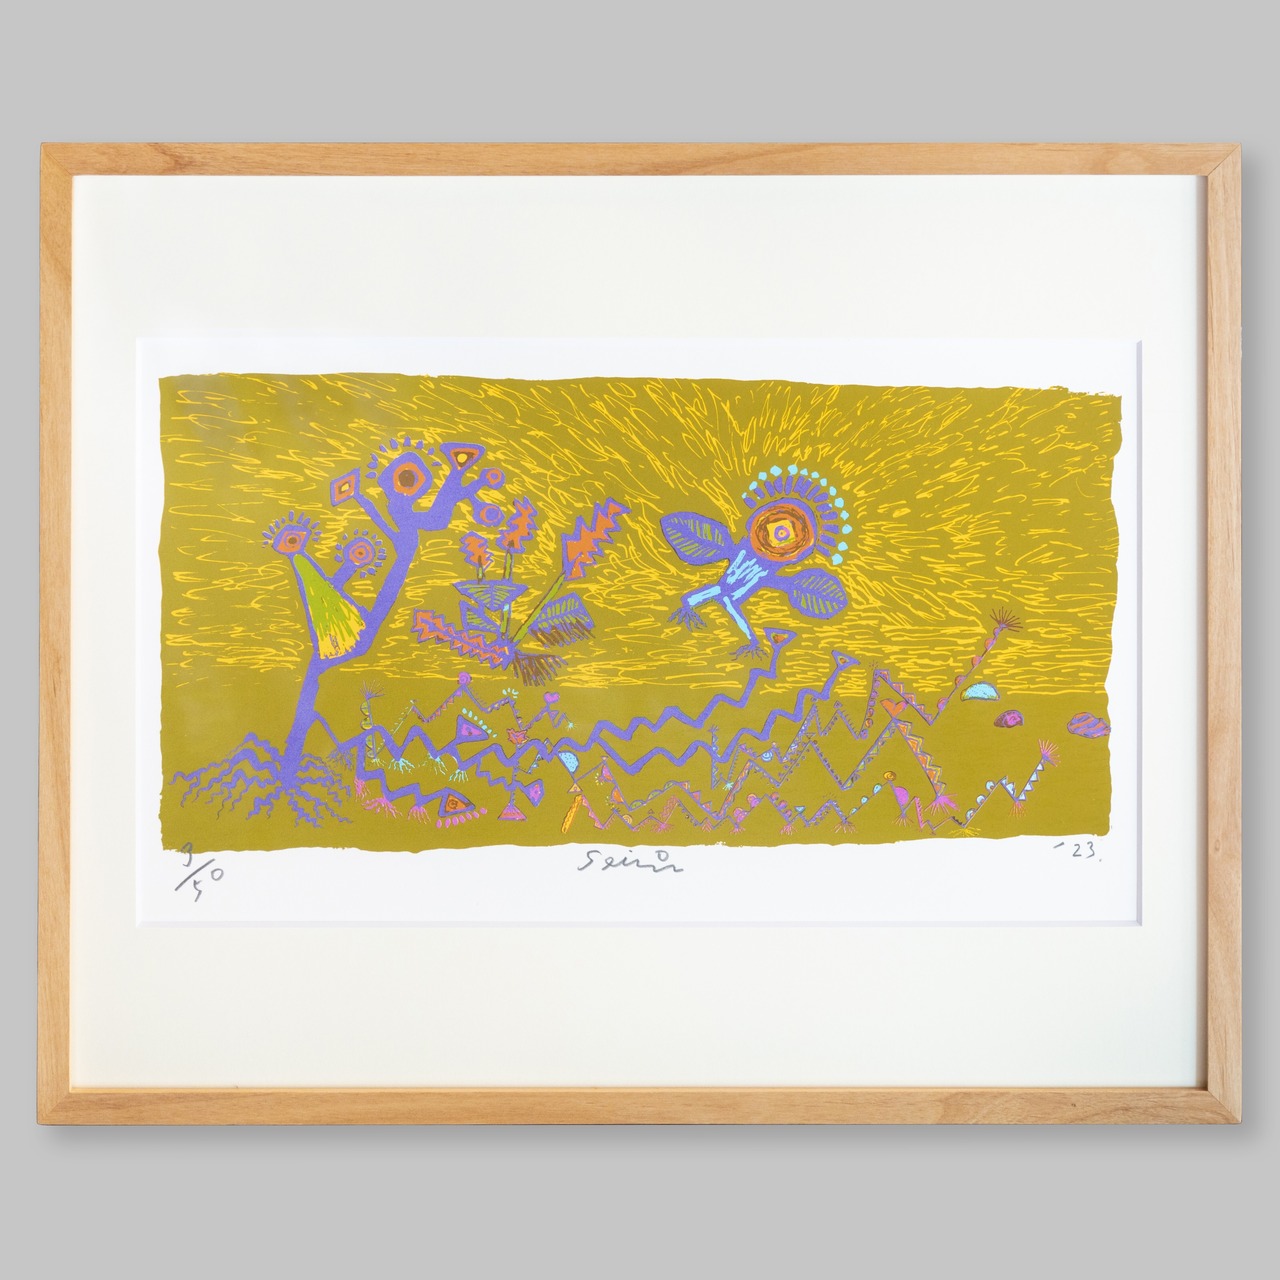 田島征三 シルクスクリーン「地を這う草にも花が咲く」/ Tashima Seizo Screen painting (Flowers broom even in the grass crawling on the ground)